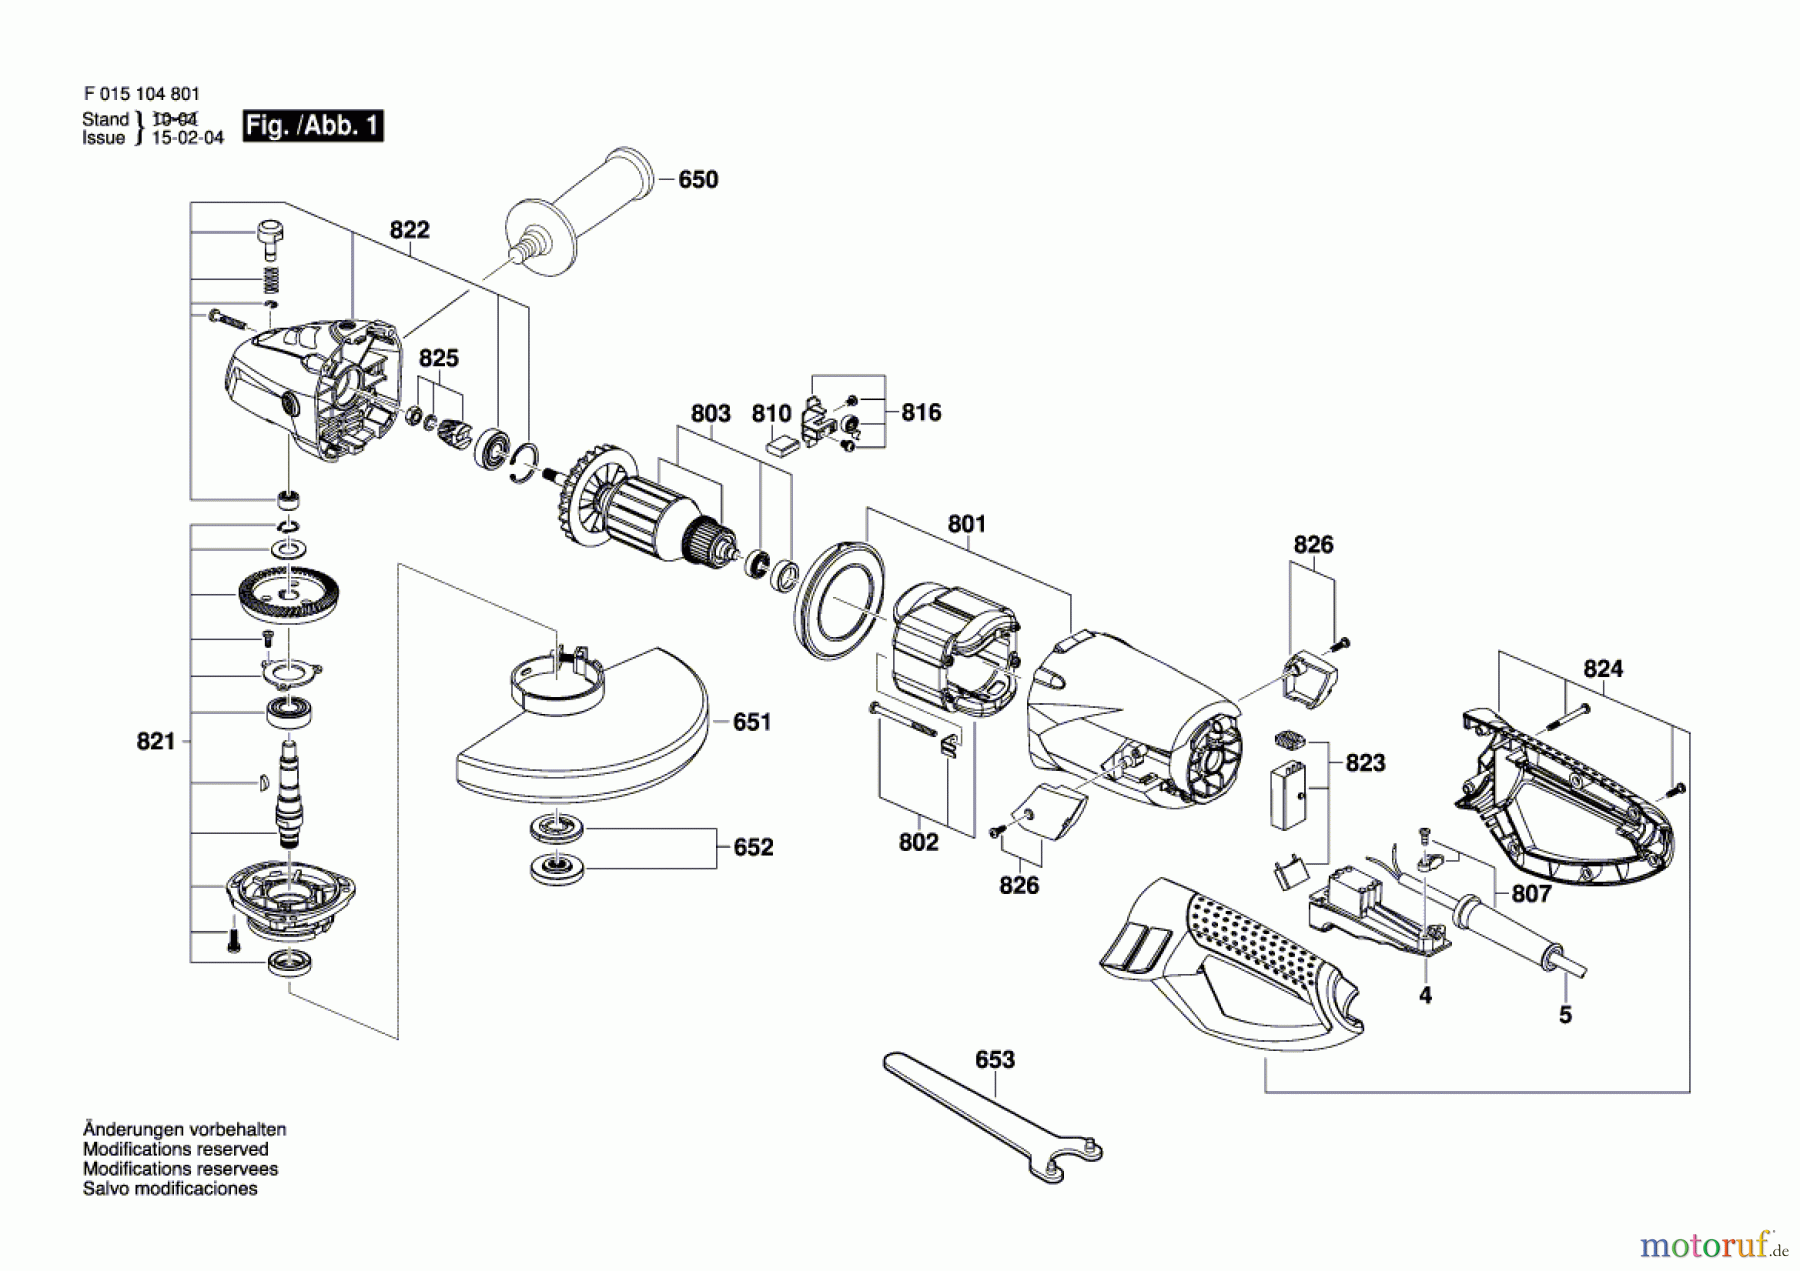  Bosch Werkzeug Winkelschleifer 1048 Seite 1